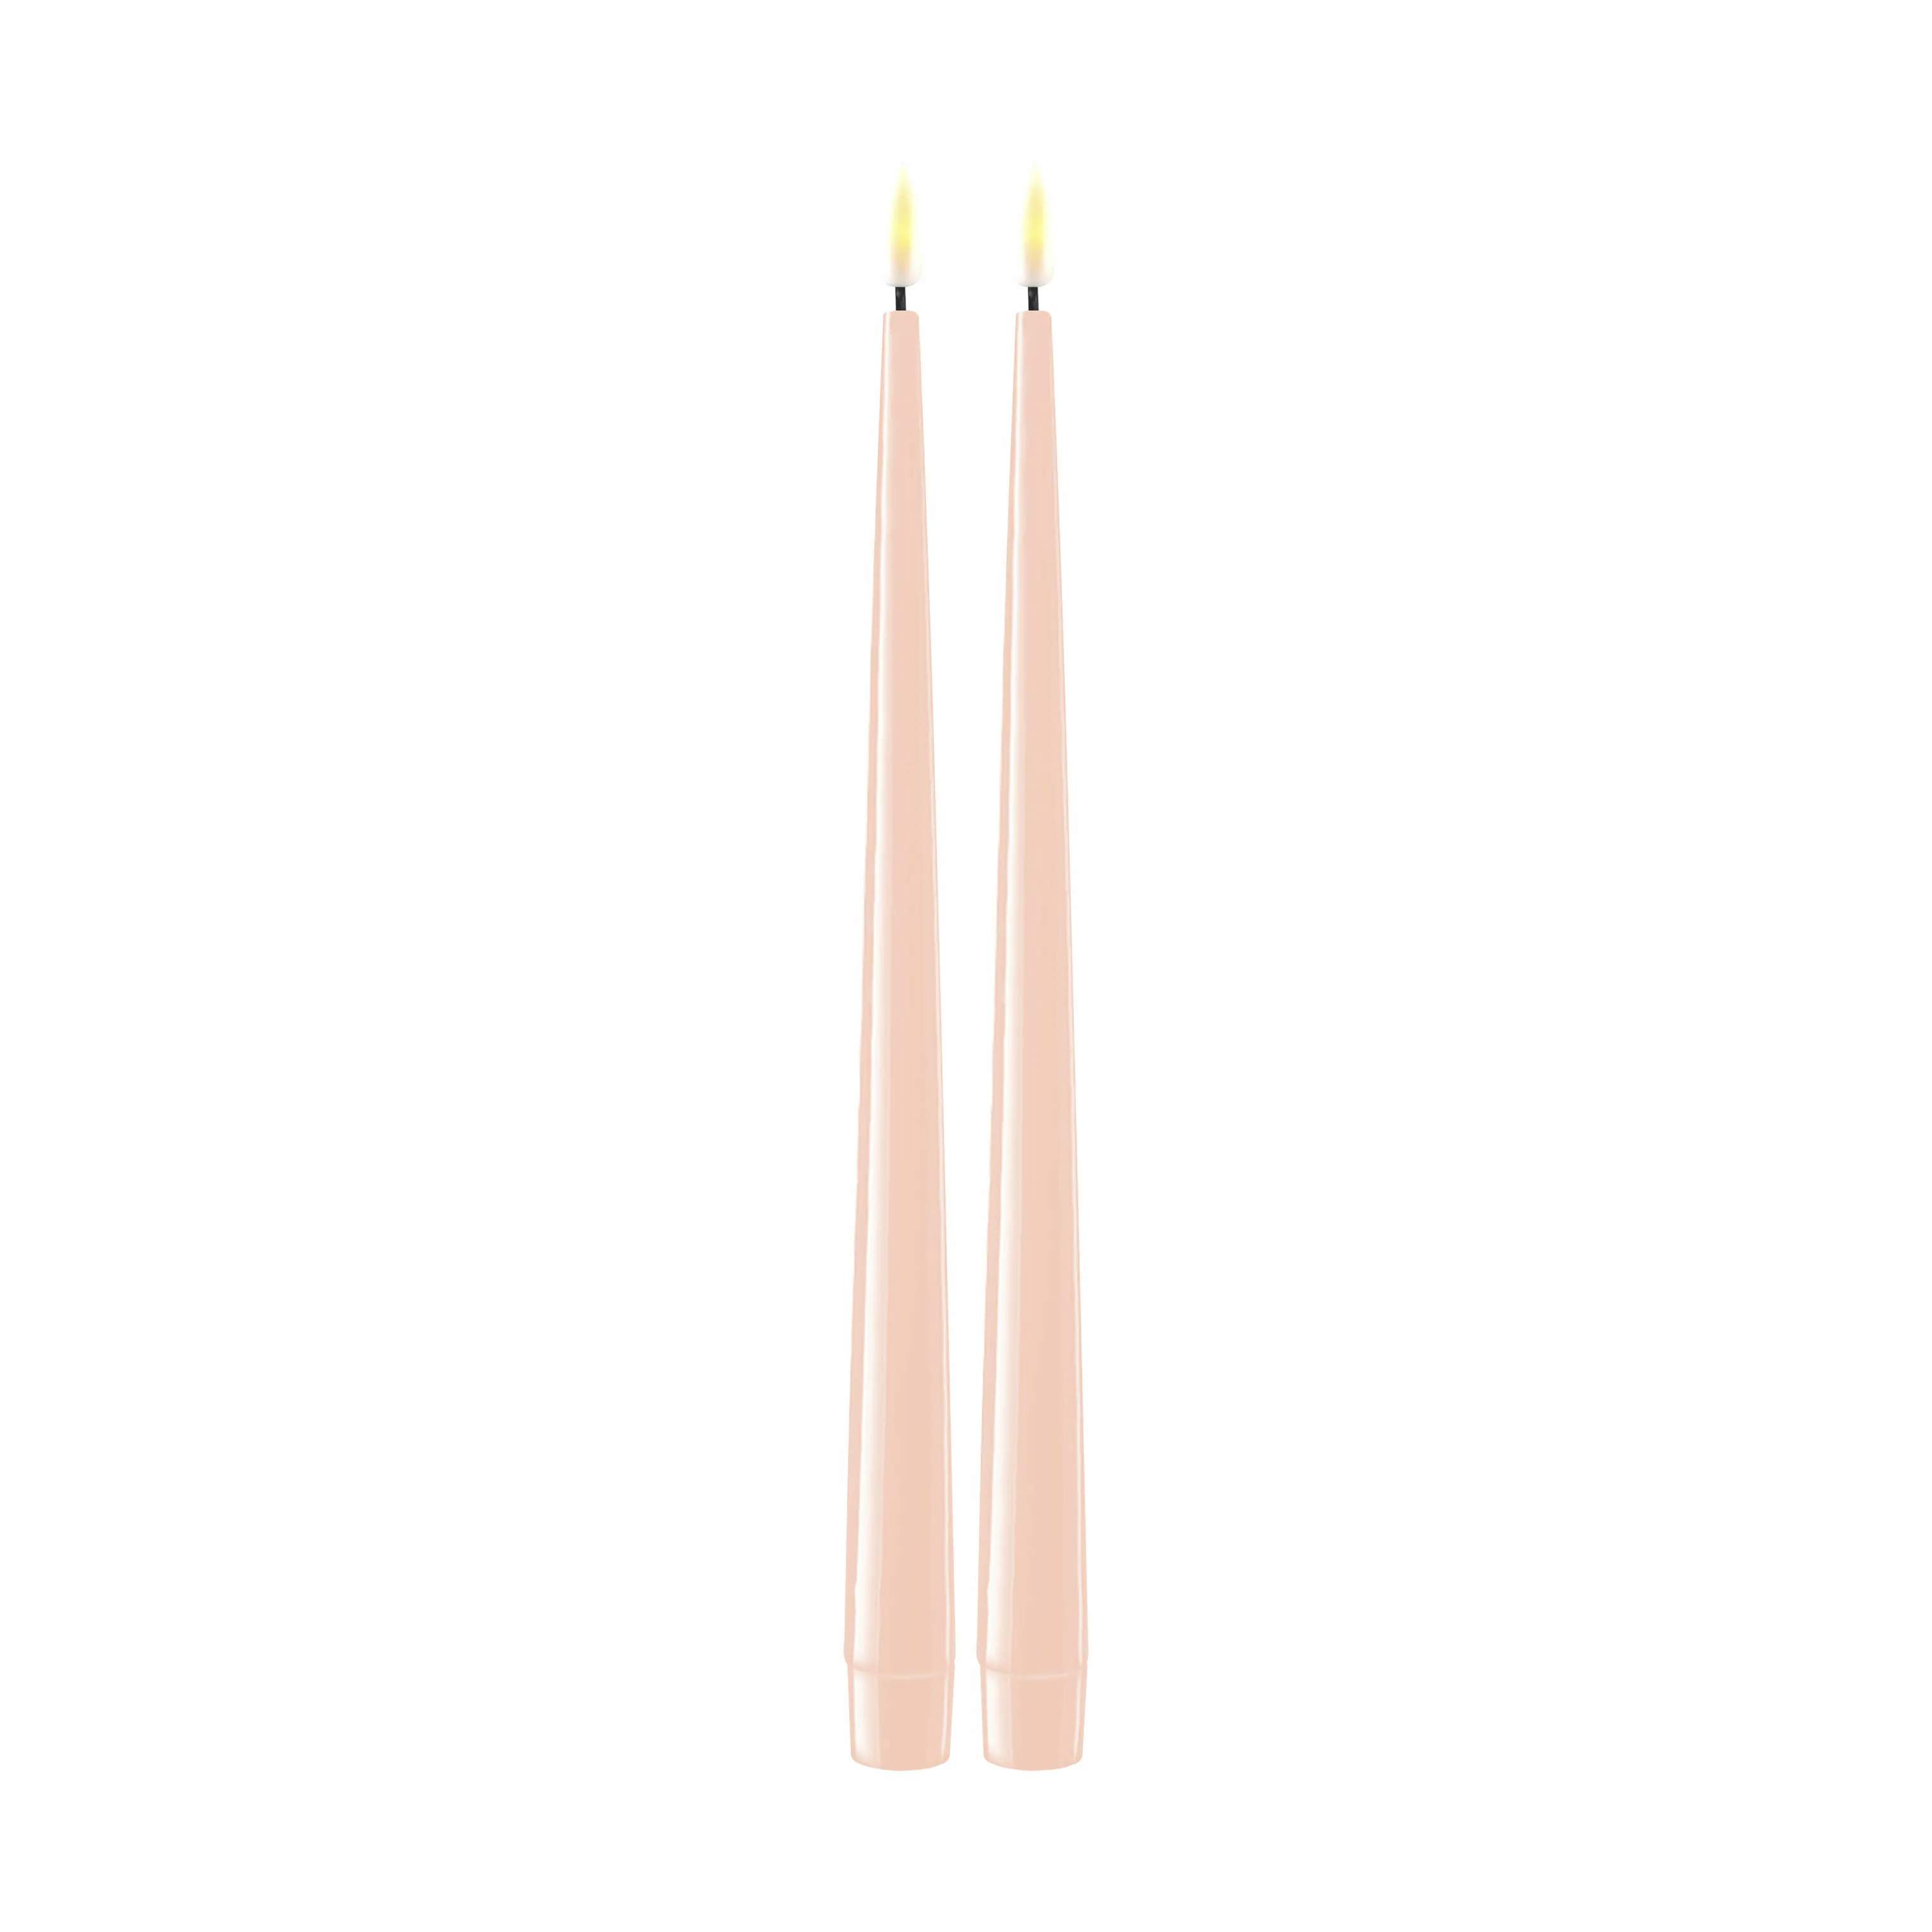 Real Flame LED Kertelys - 2 stk., lys rosa, large